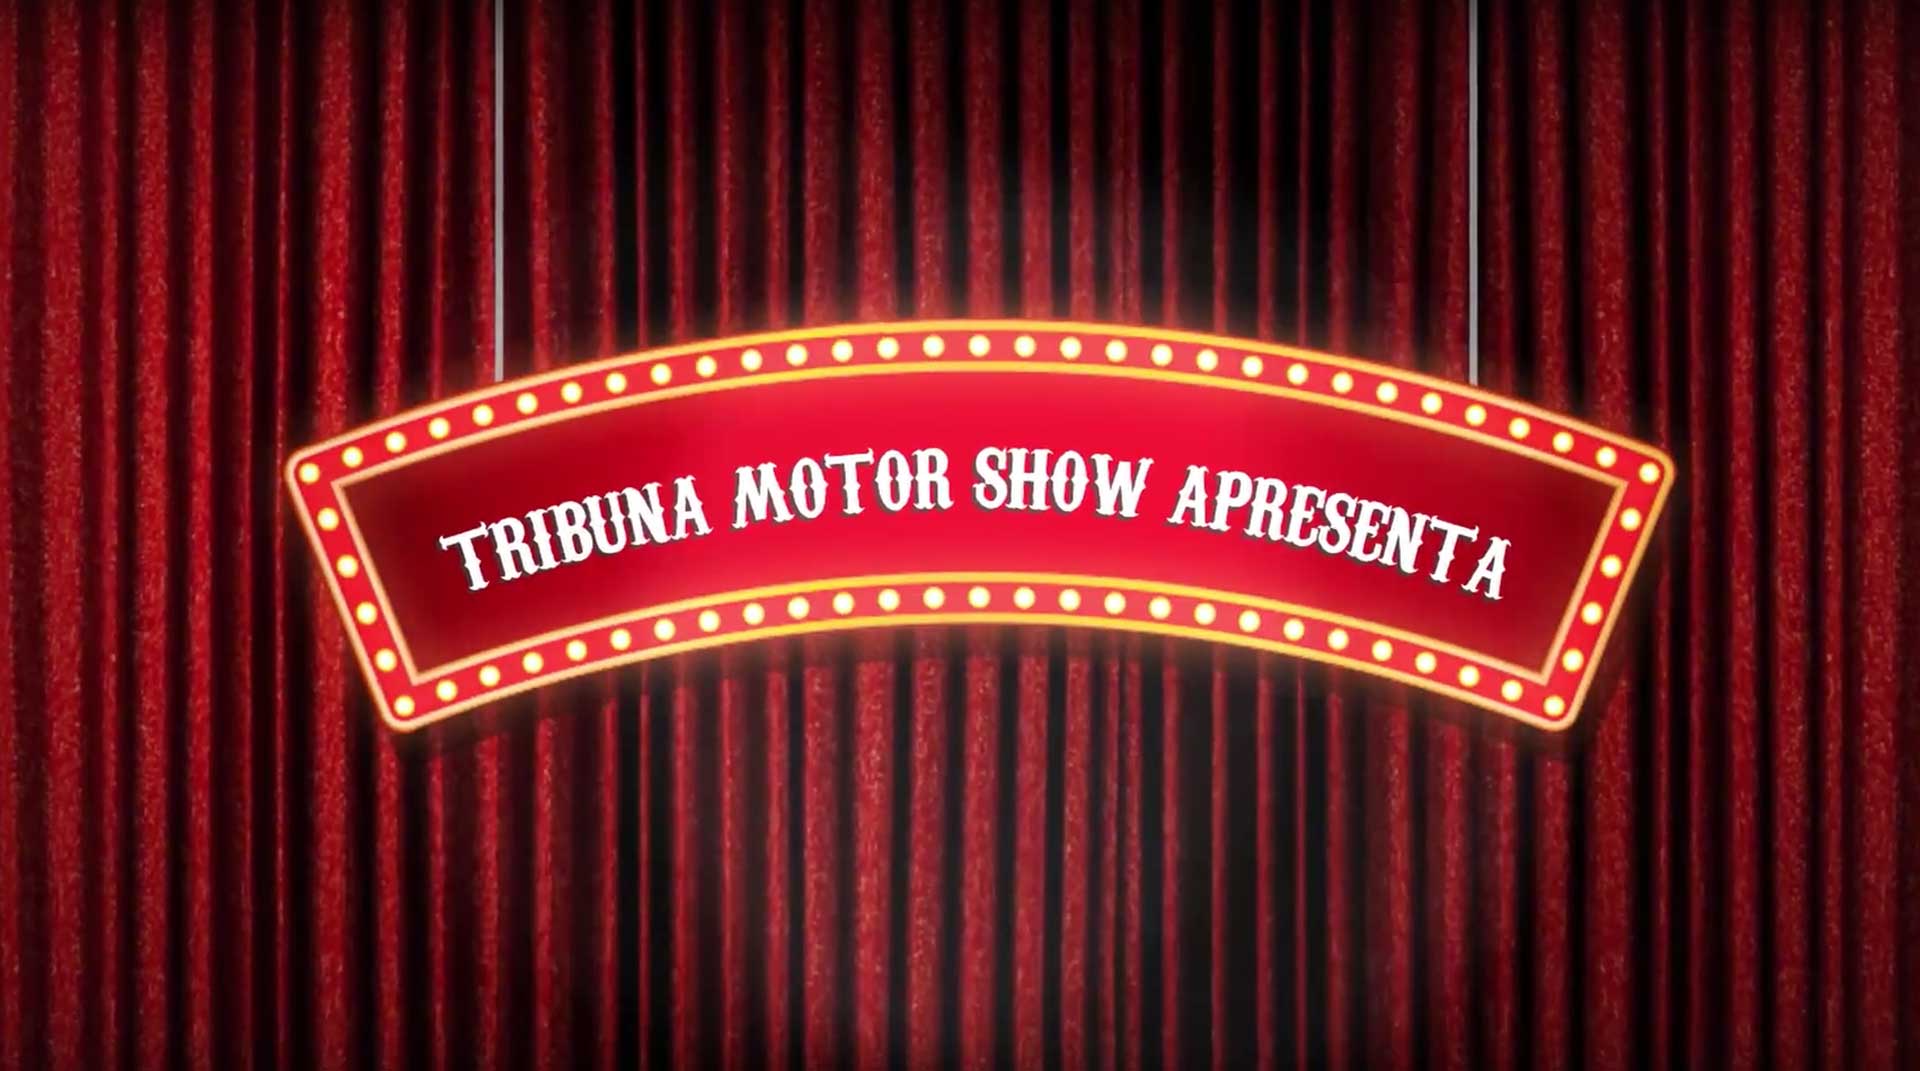 Tribuna Motor Show